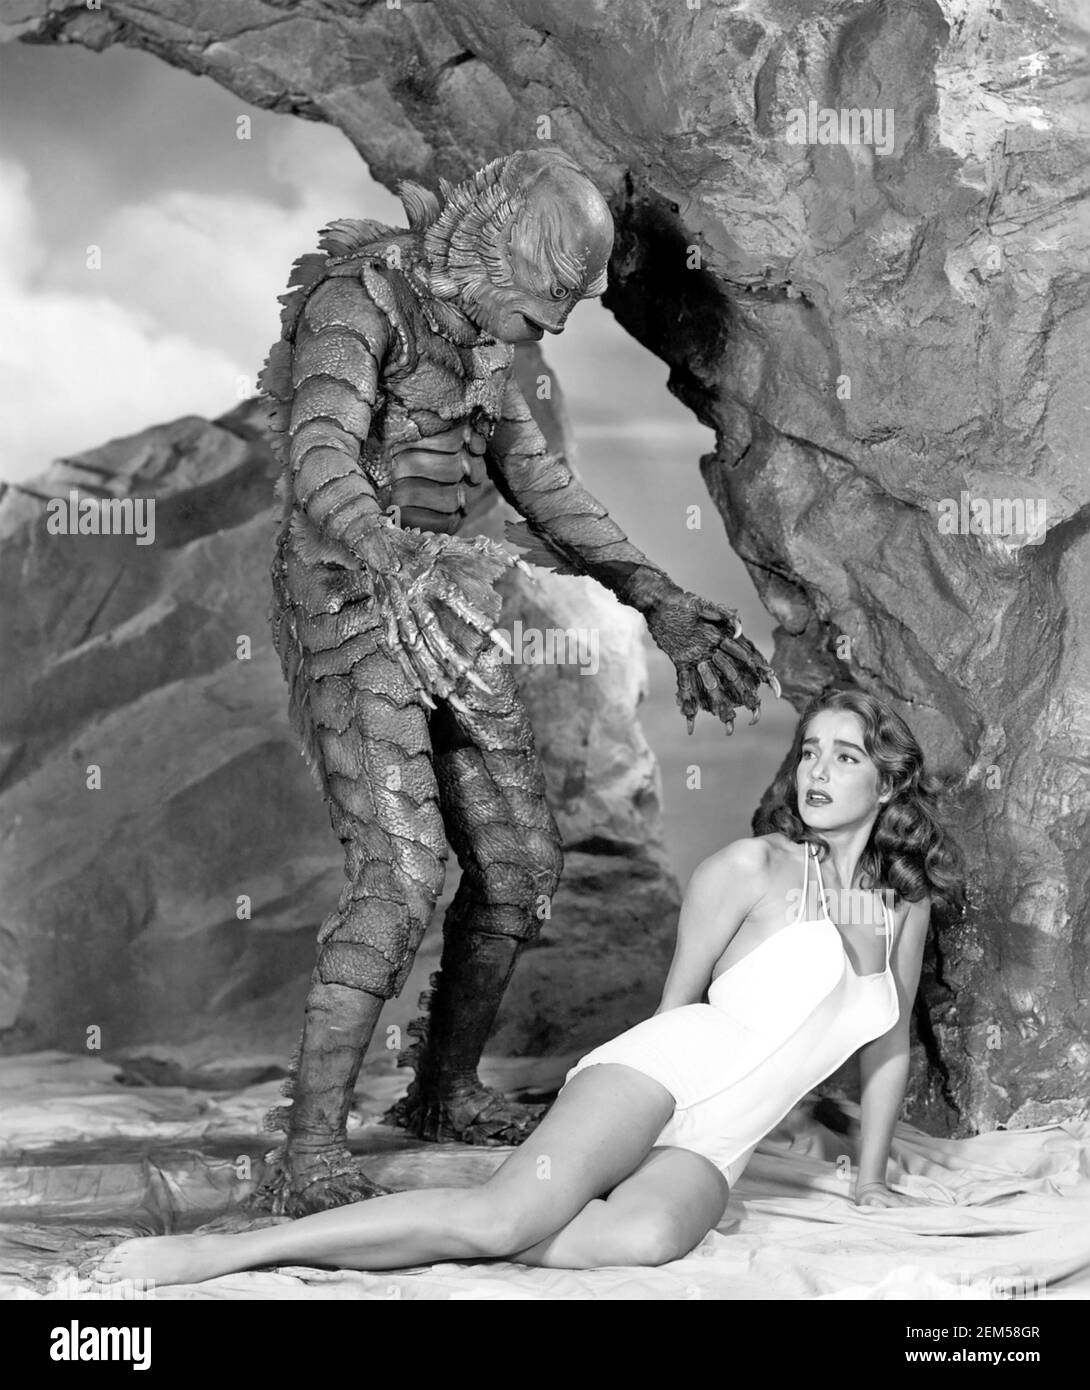 KREATUR AUS DER SCHWARZEN LAGUNE 1954 Universal-Internationaler Film mit Richard Carlson als Kreatur und Julia Adams als Kay Stockfoto